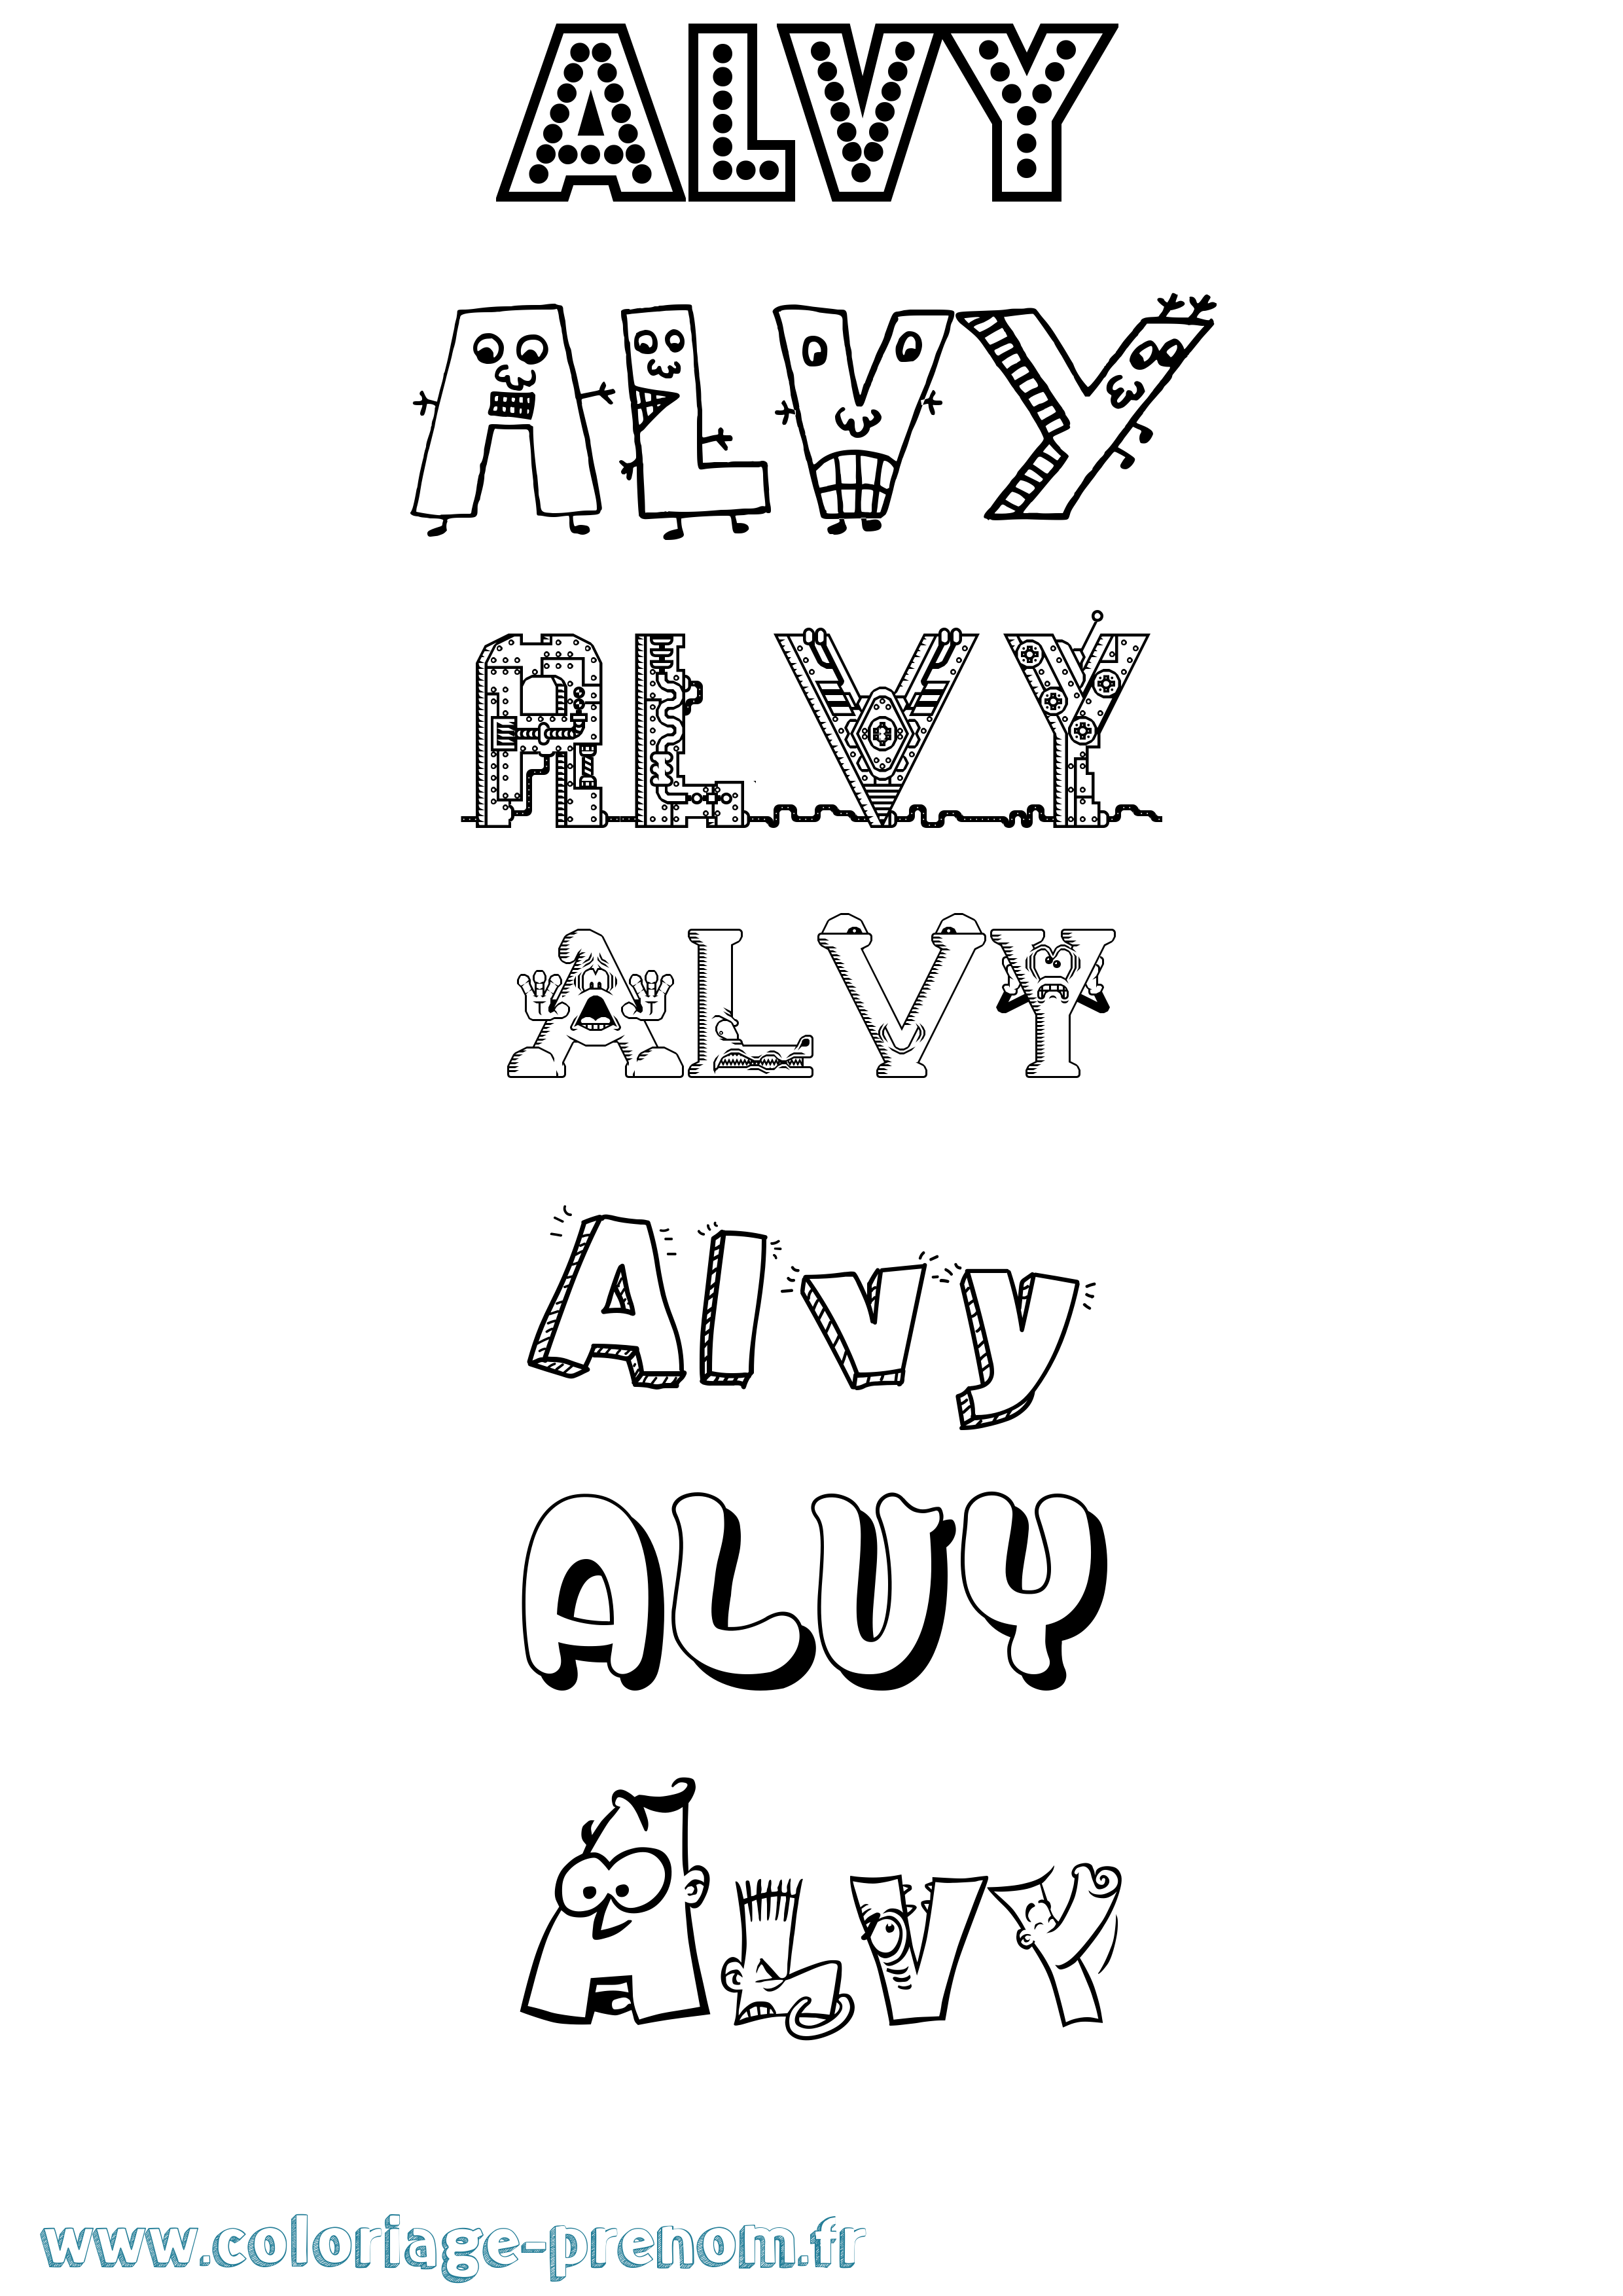 Coloriage prénom Alvy Fun